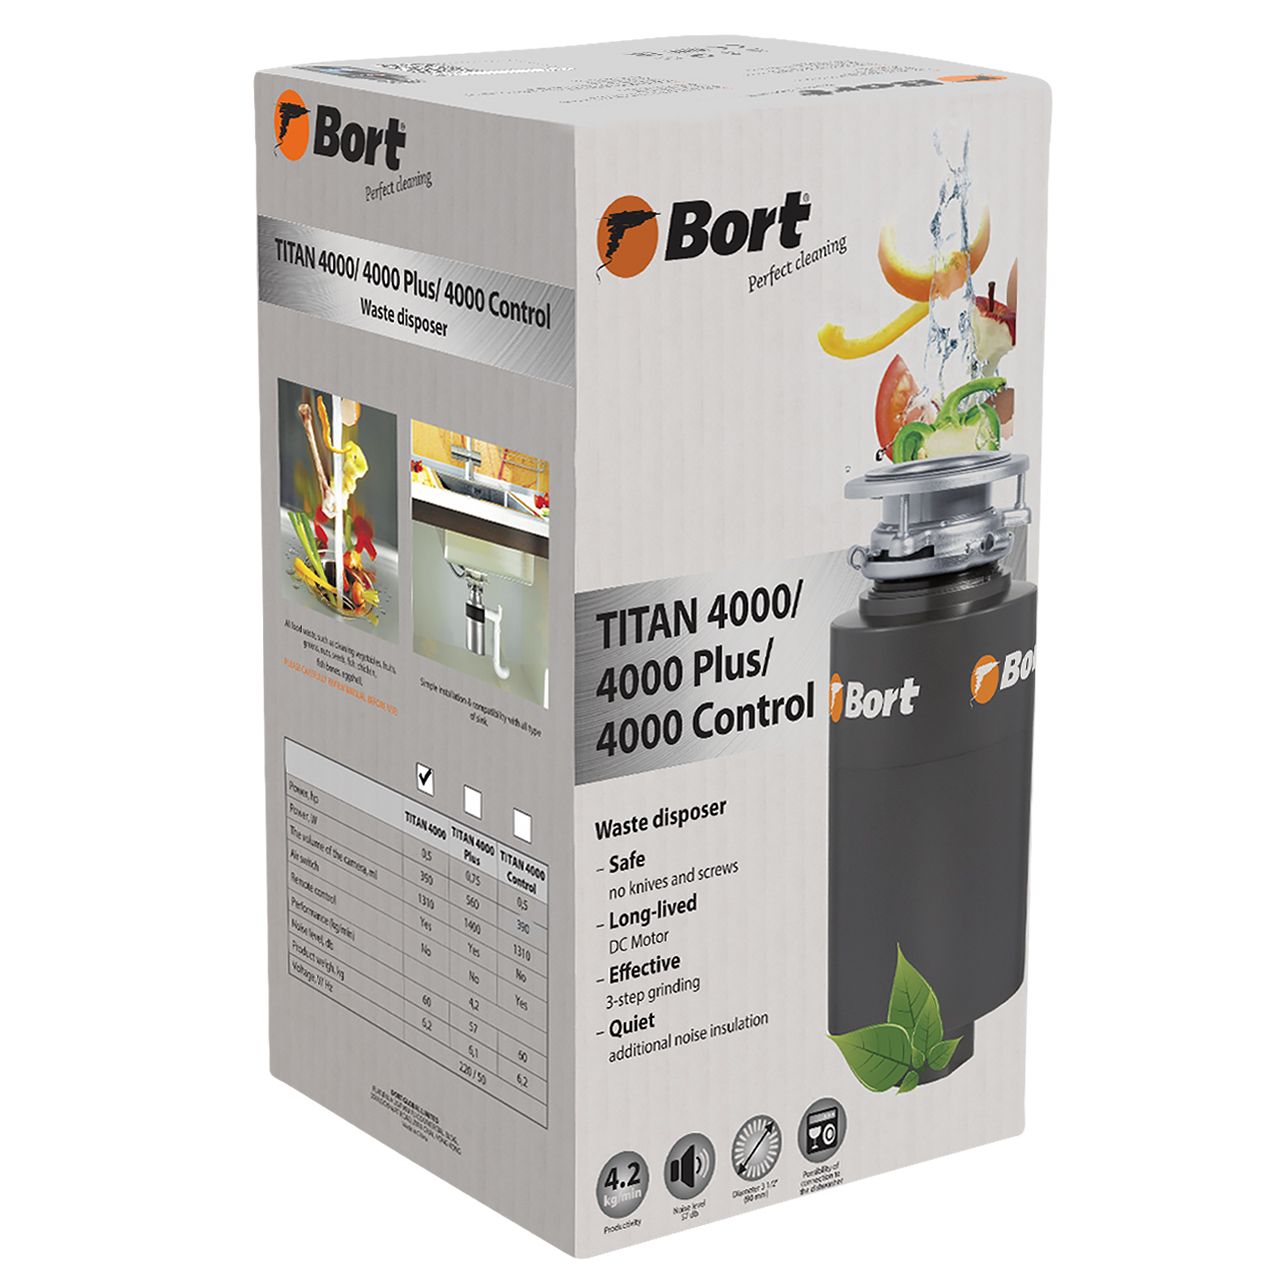  пищевых отходов Bort TITAN 4000 (91275769) серебристый .